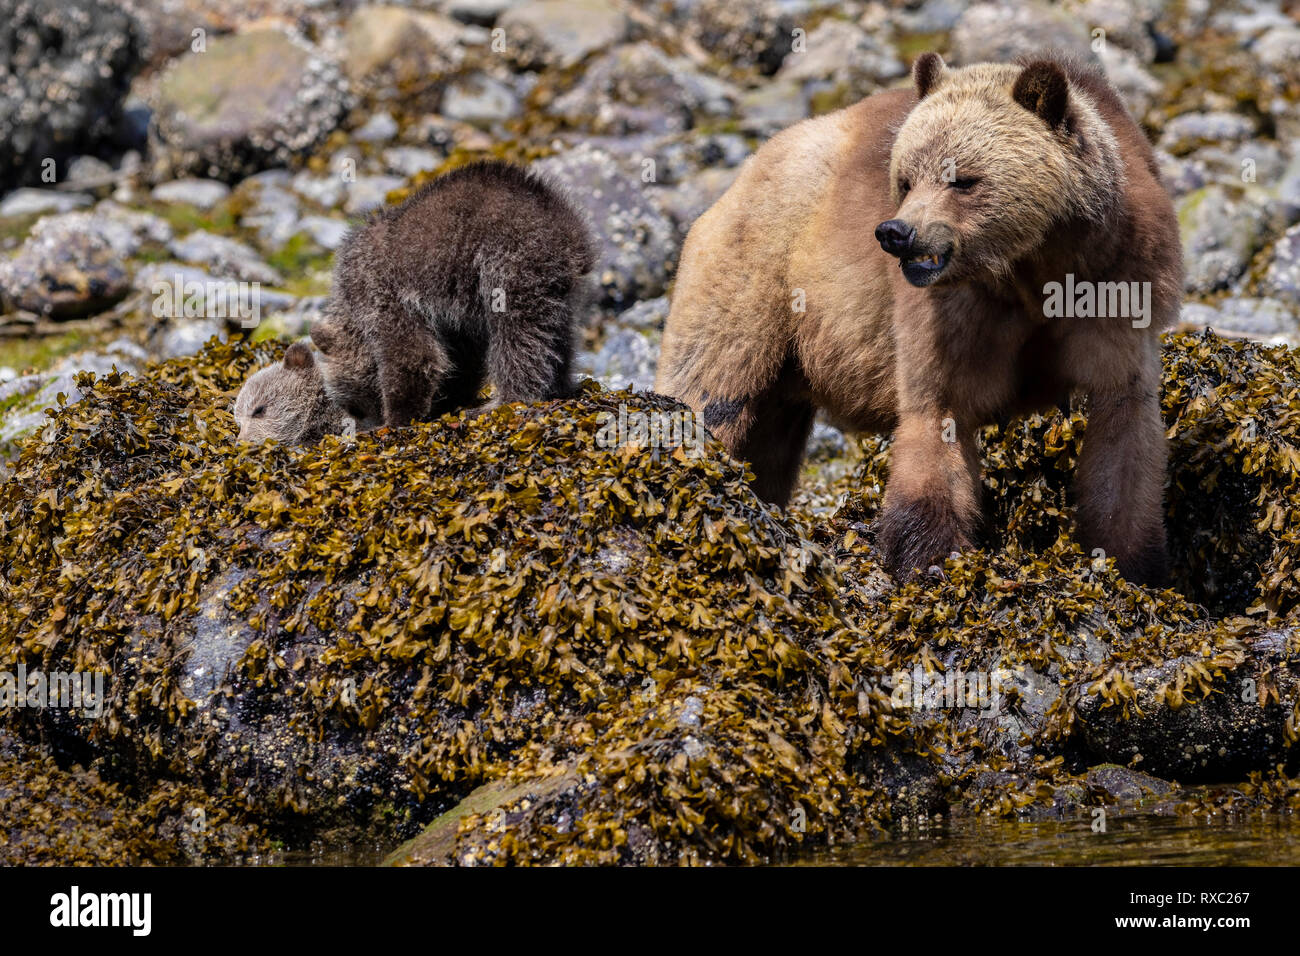 El oso Grizzly (Ursus arctos horribilis) siembra con dos cachorros de fiesta a lo largo de la costa en la marea baja en Glendale Cove, Knight Inlet, First Nations Territory, British Columbia, Canadá. Foto de stock